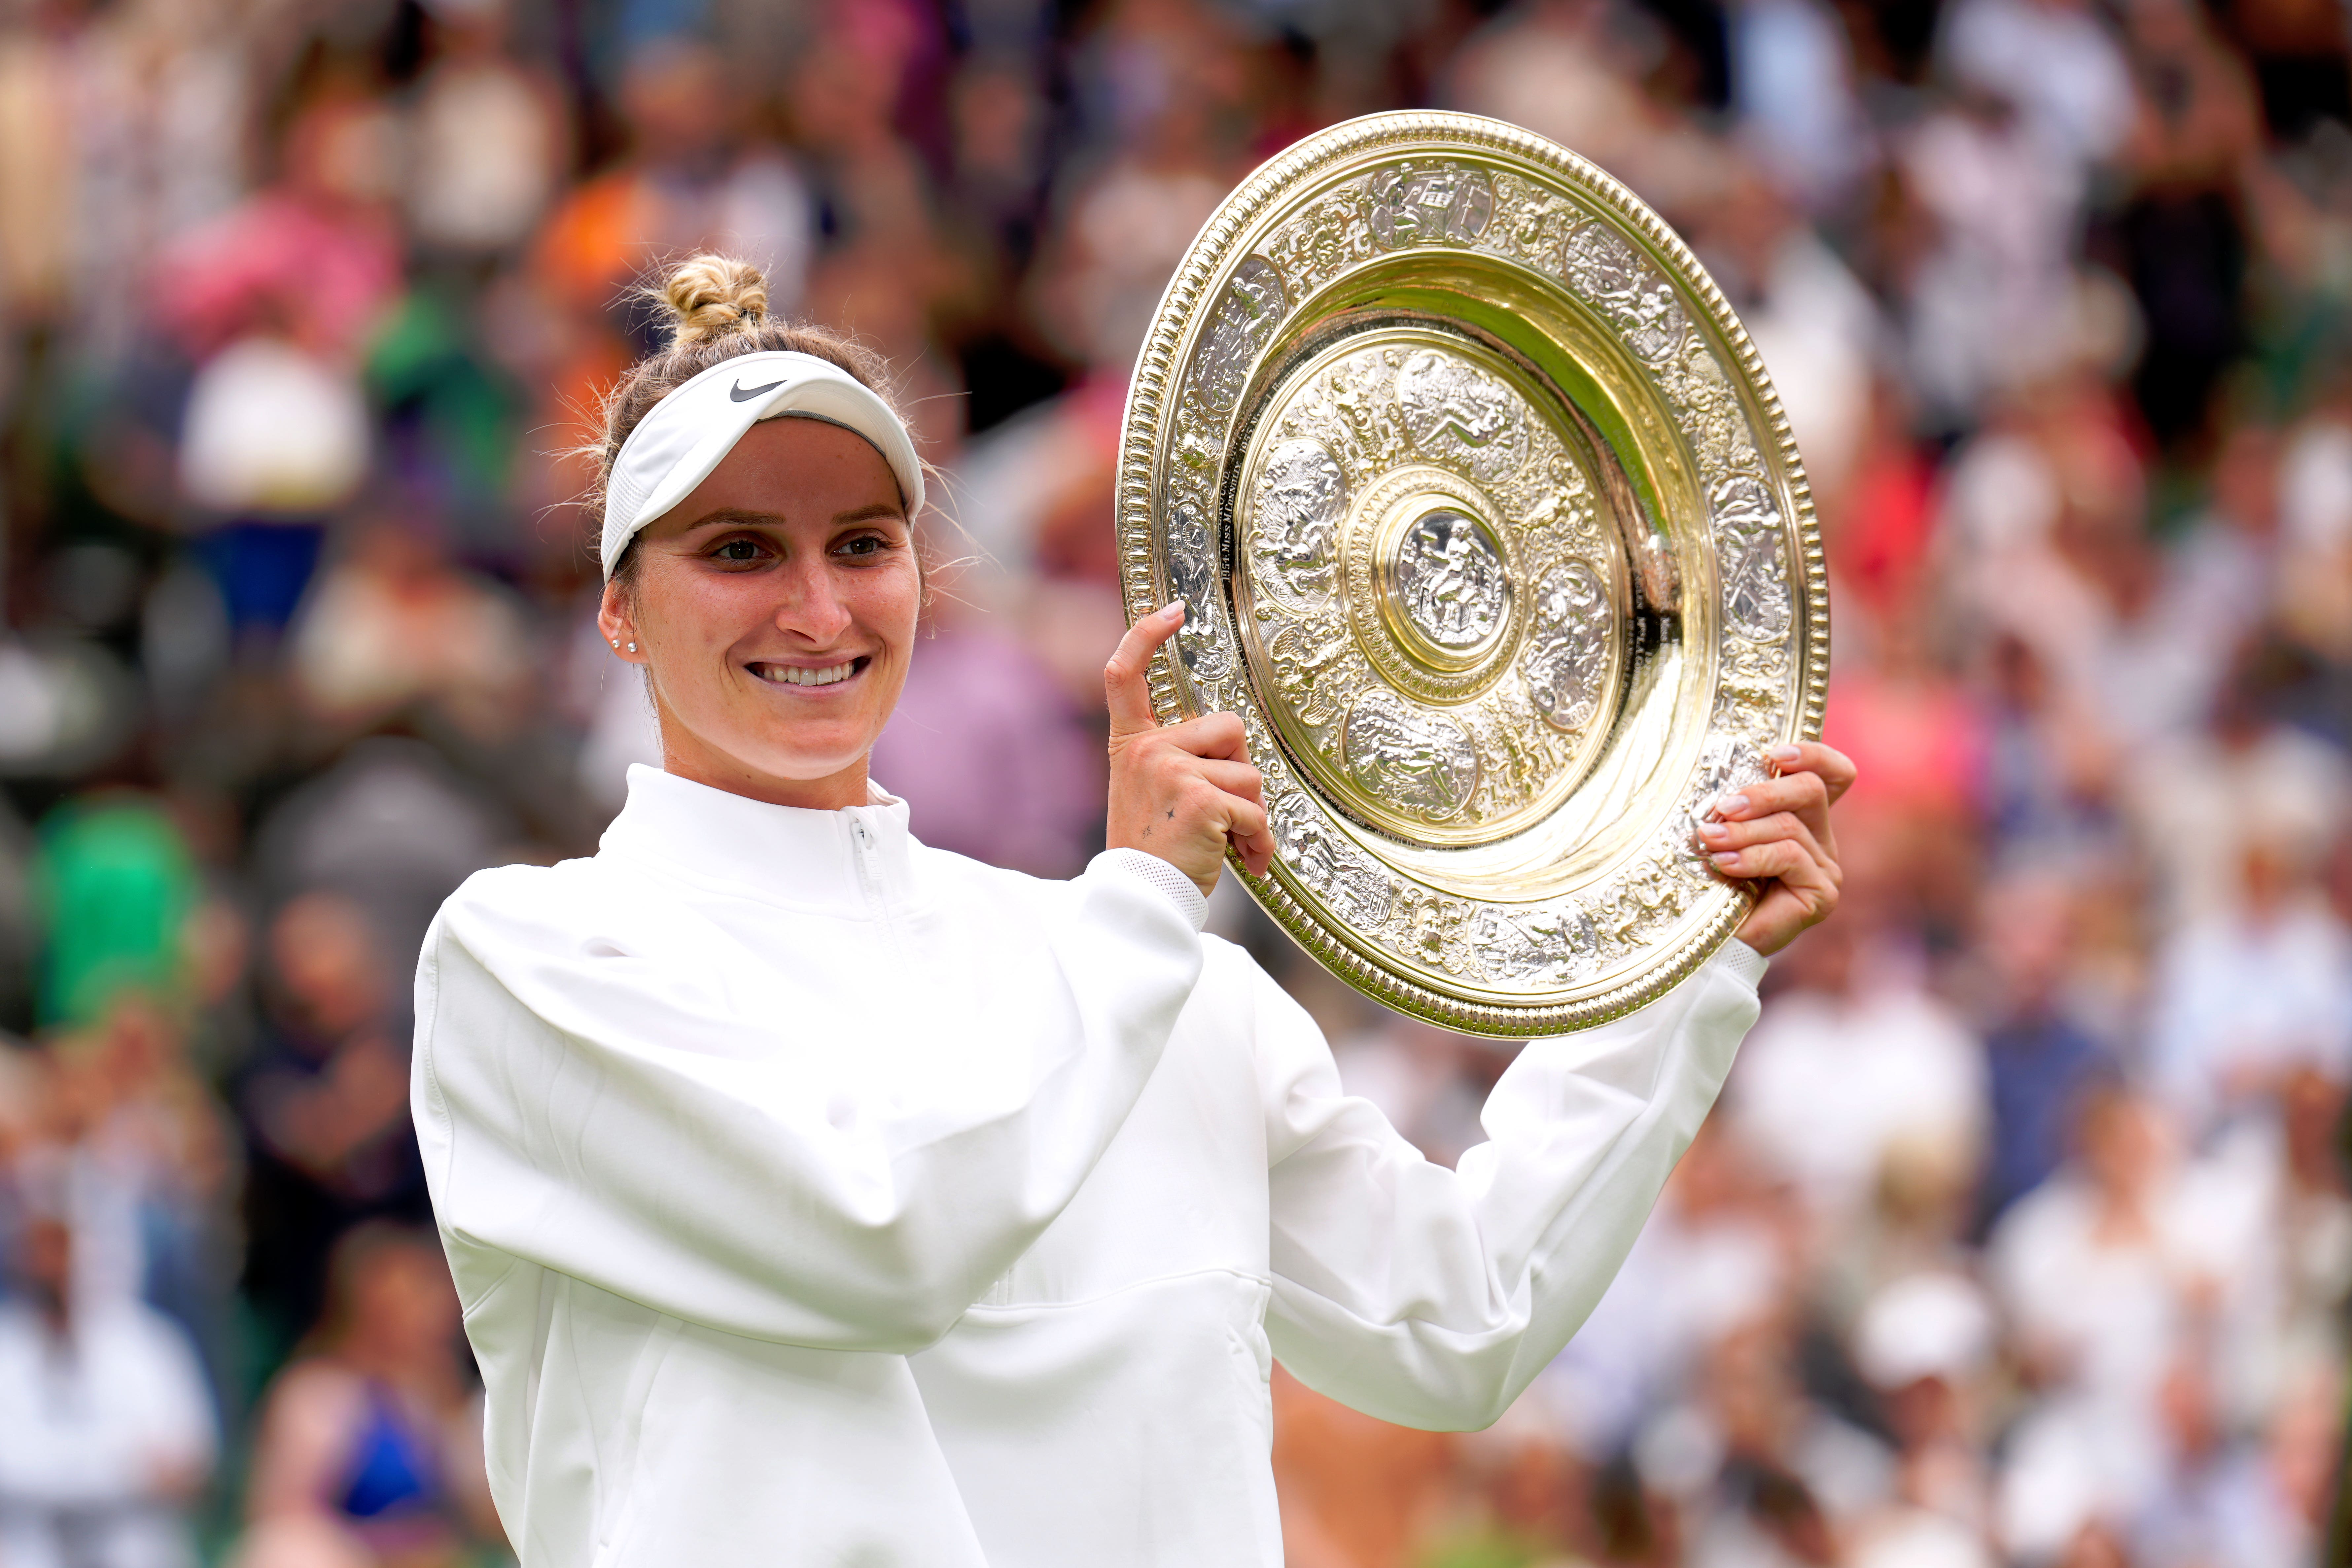 Marketa Vondrousova brilliantly won the women’s singles title at Wimbledon last year